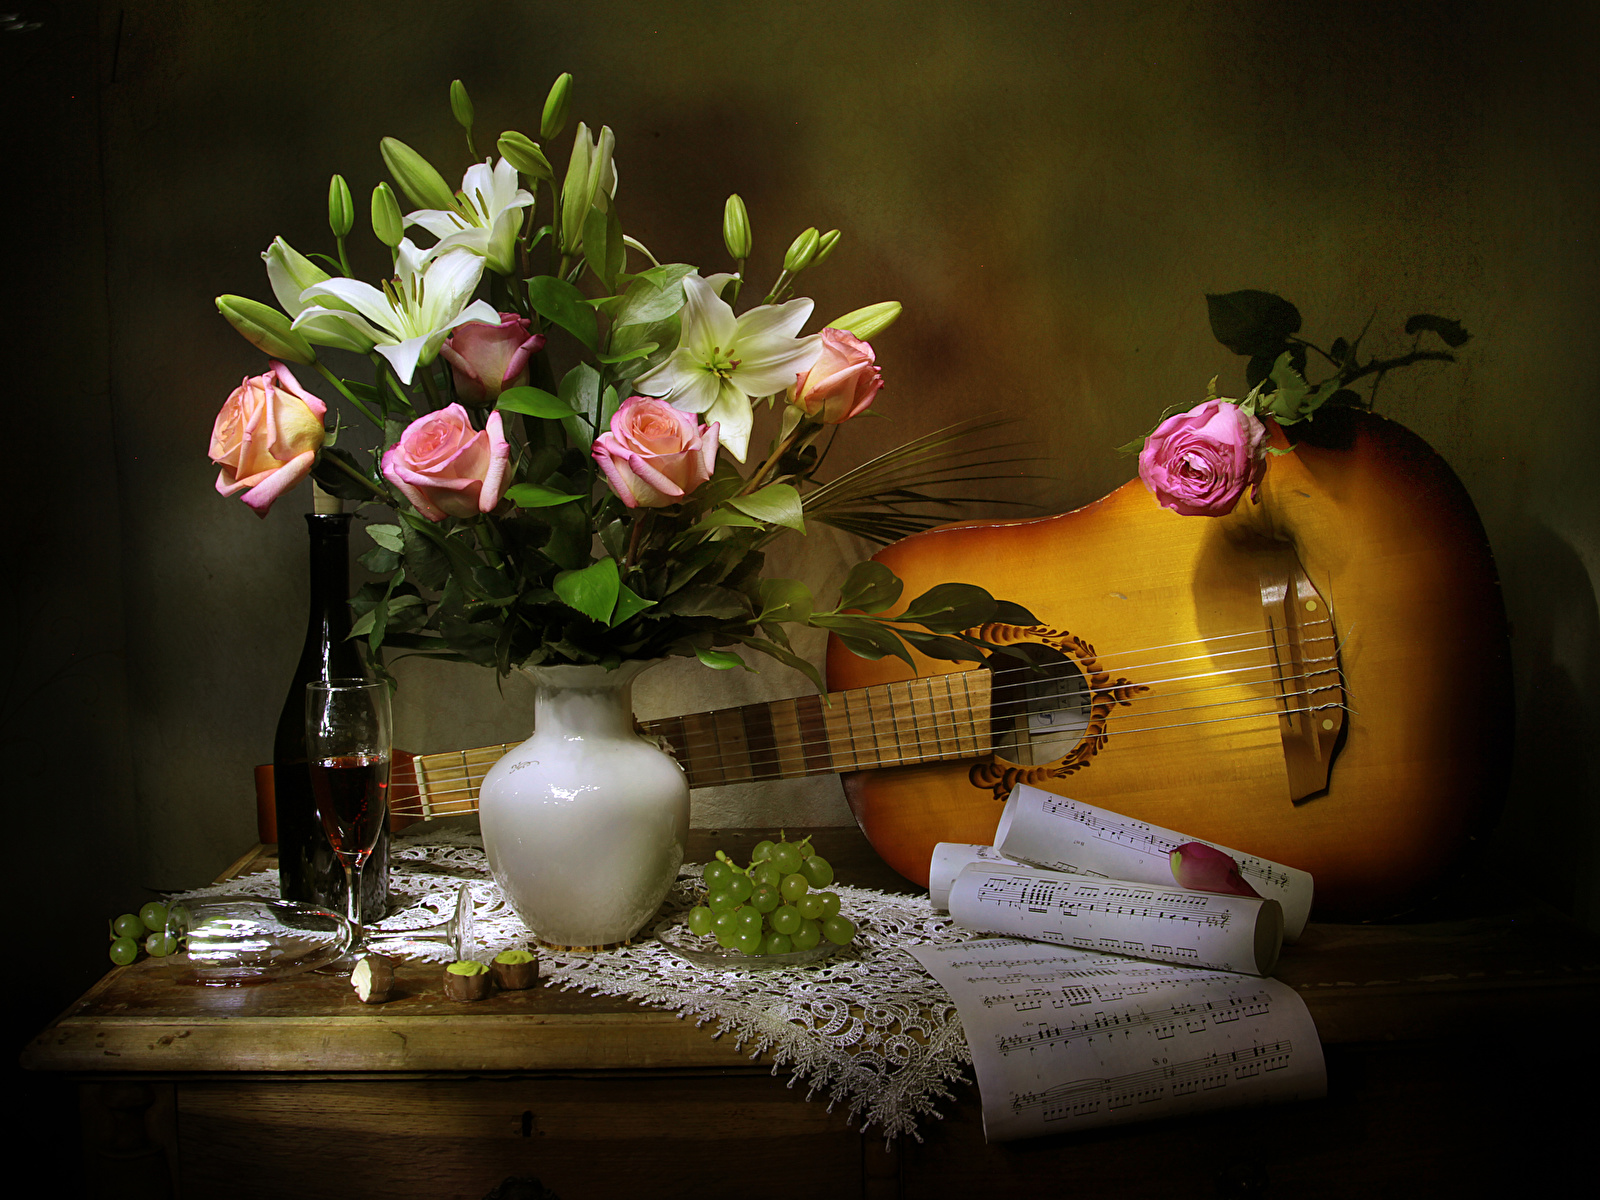 https://s1.1zoom.ru/b5050/871/Still-life_Roses_Tulips_Wine_Grapes_Notes_Vase_546635_1600x1200.jpg